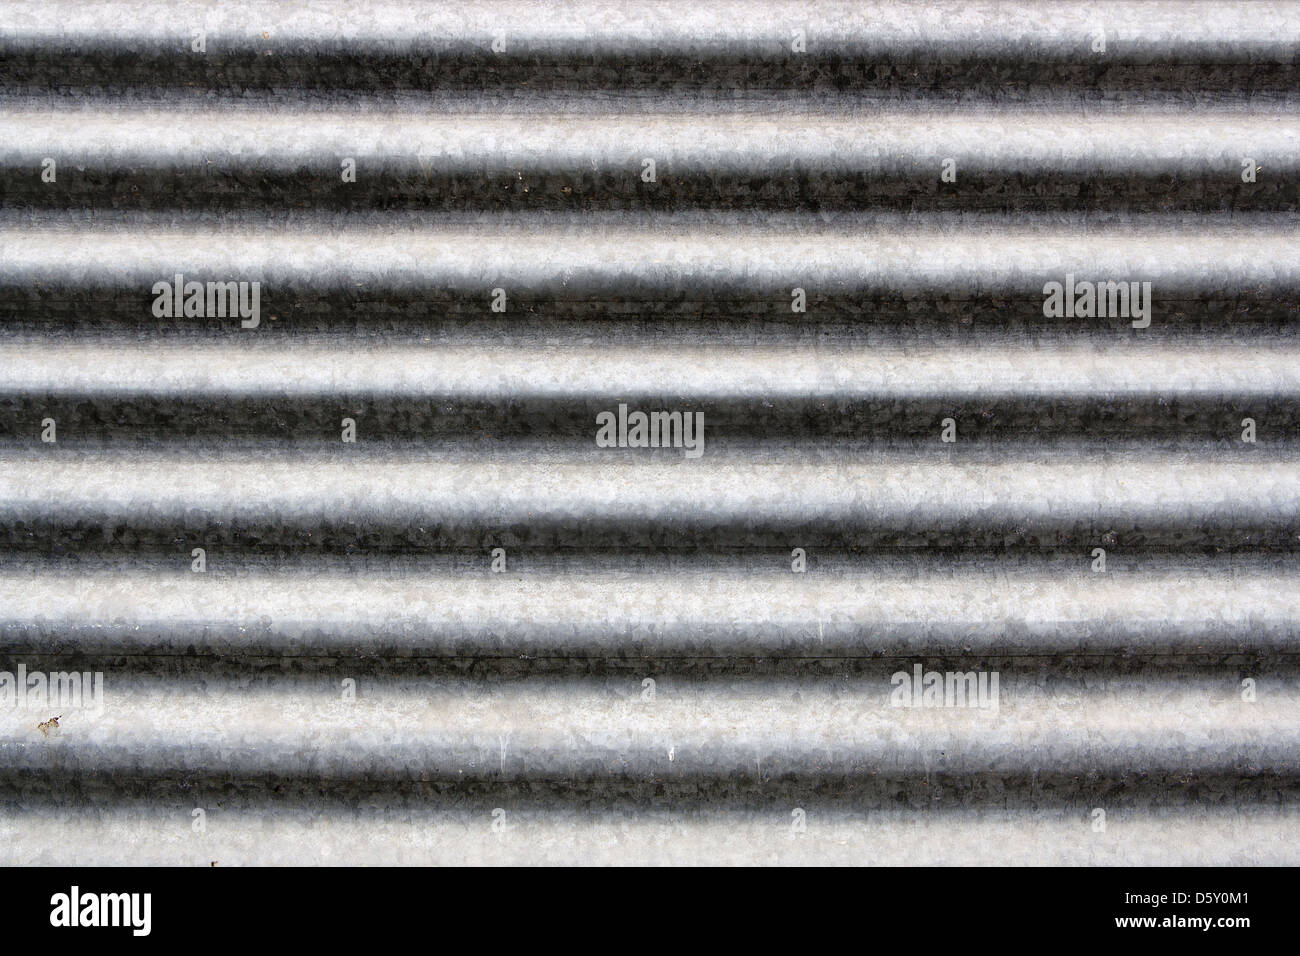 zinc coated sheed Stock Photo